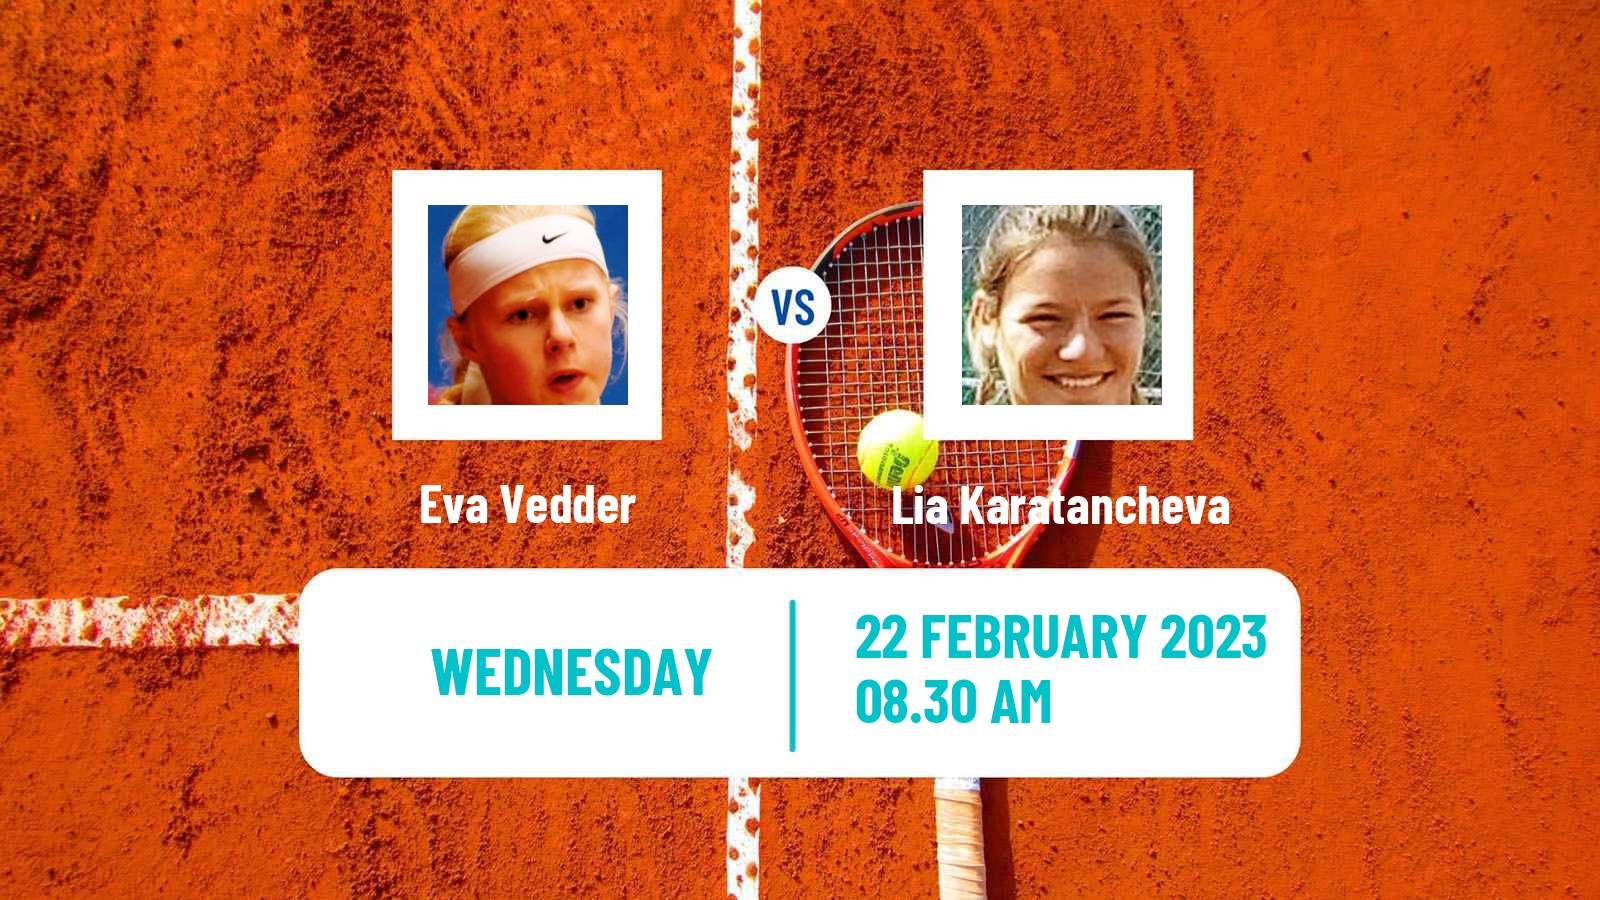 Tennis ITF Tournaments Eva Vedder - Lia Karatancheva